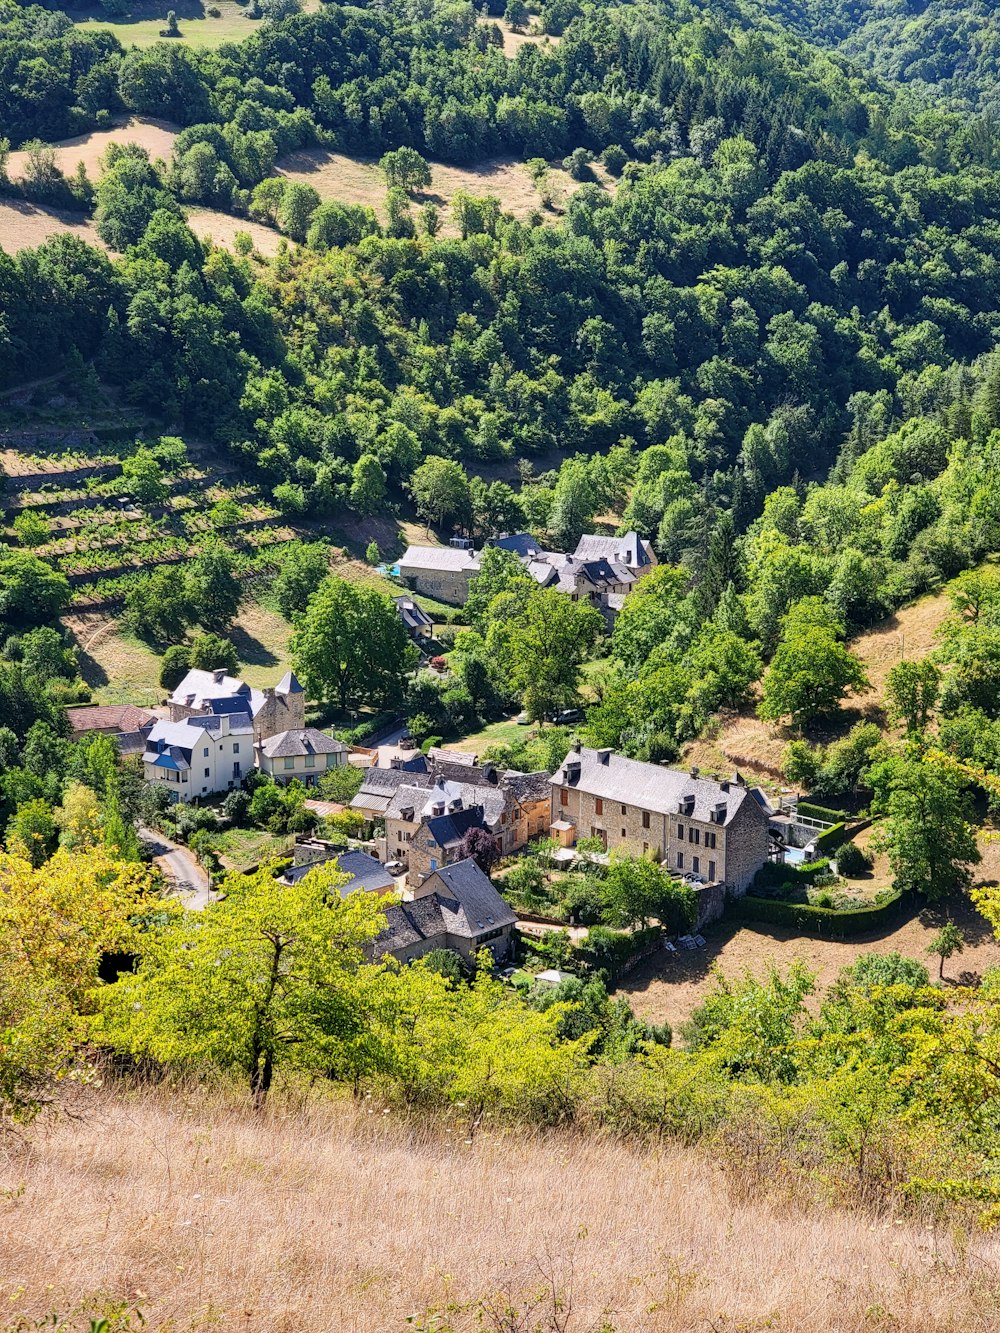 Una vista aérea de una casa en medio de una zona boscosa